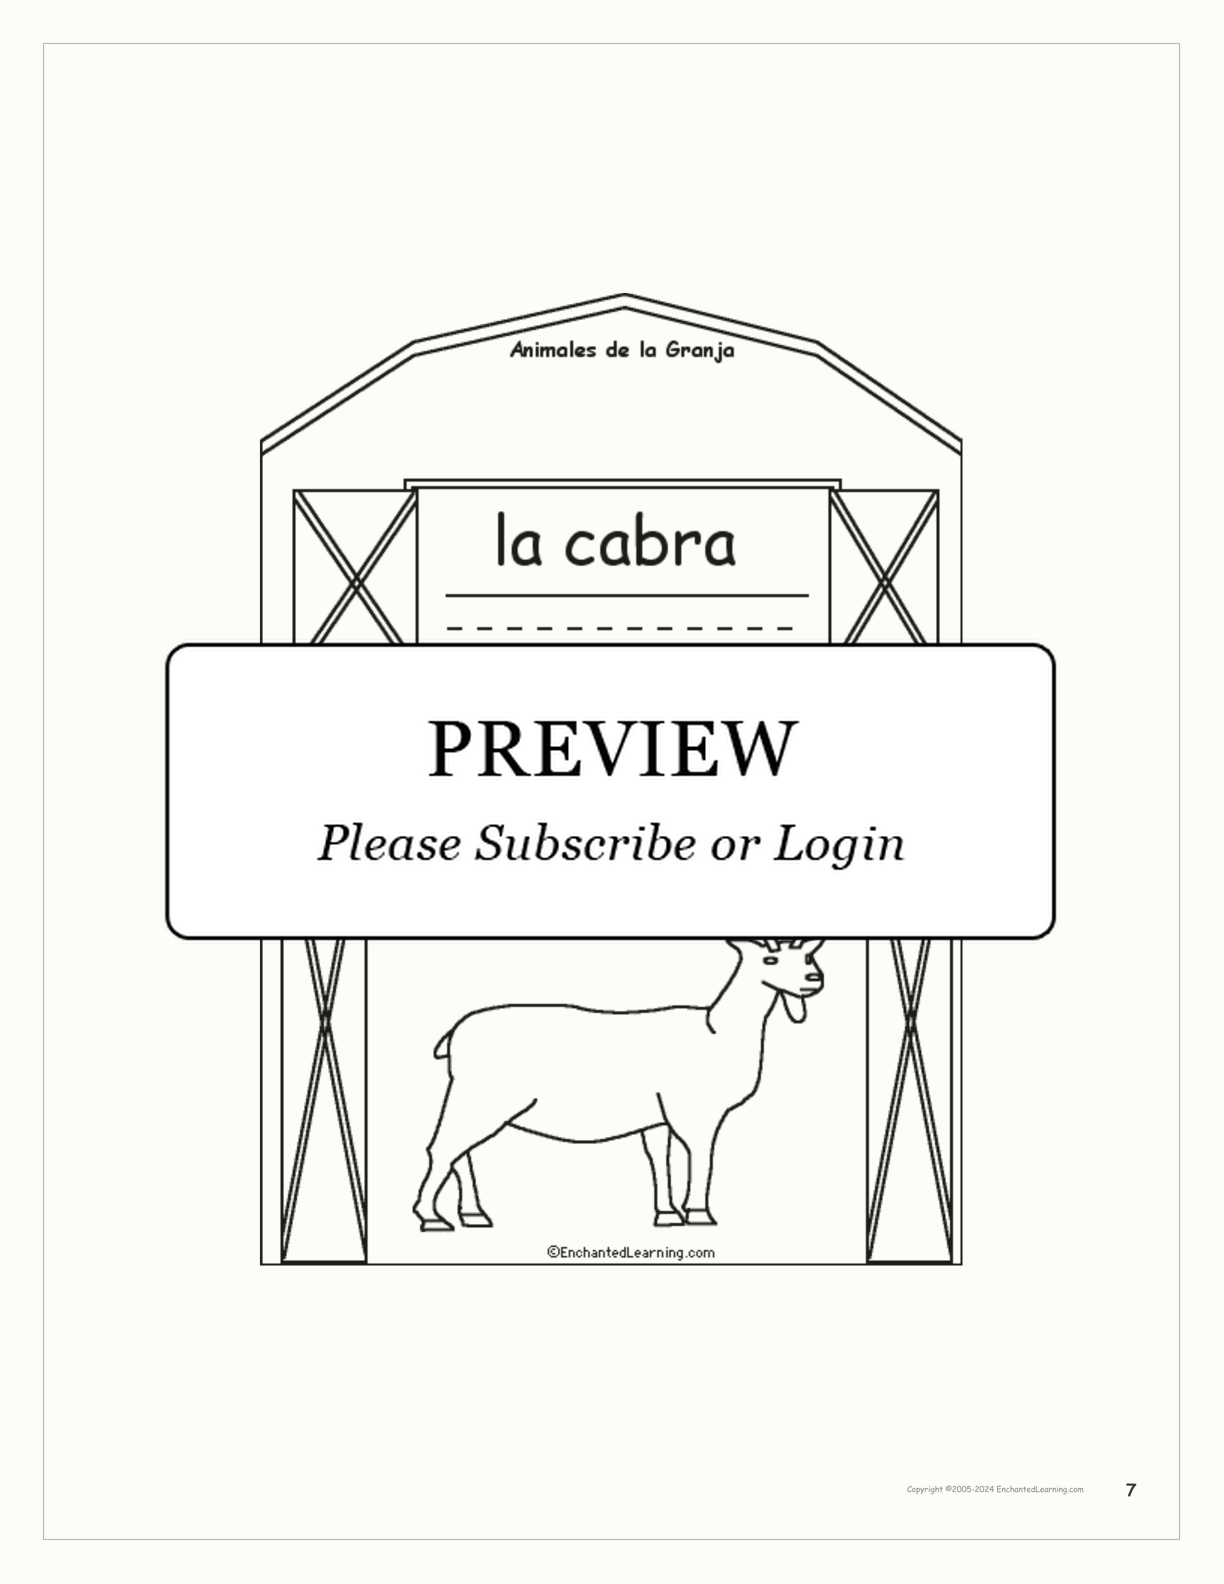 Animales de la Granja Book interactive printout page 7